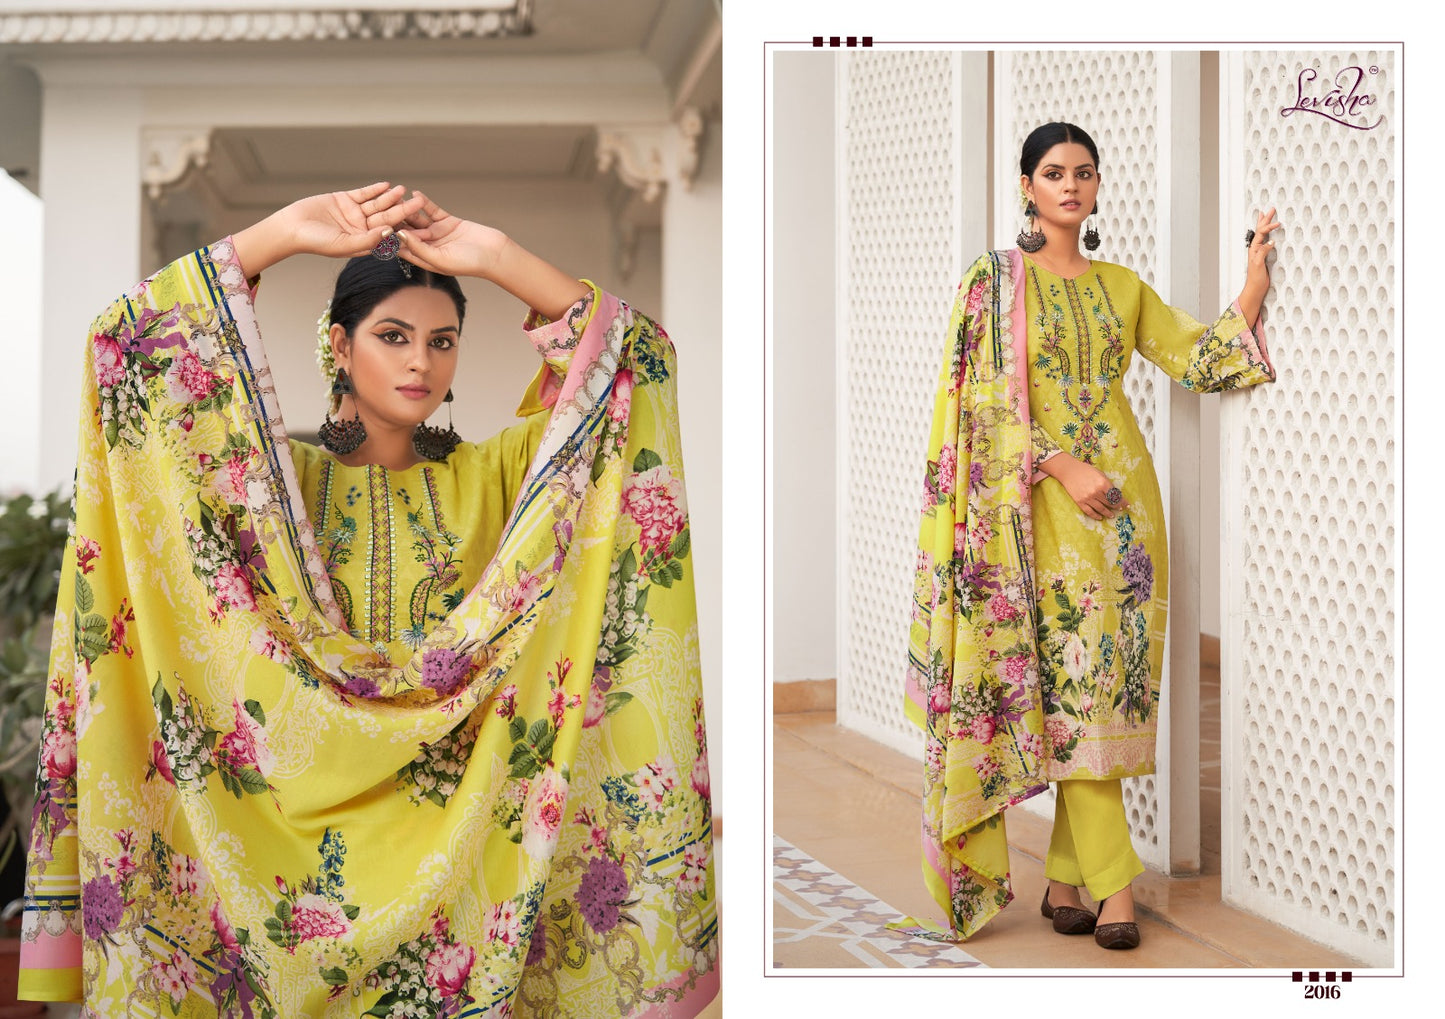 Lyra Levisha Cotton Karachi Salwar Suits